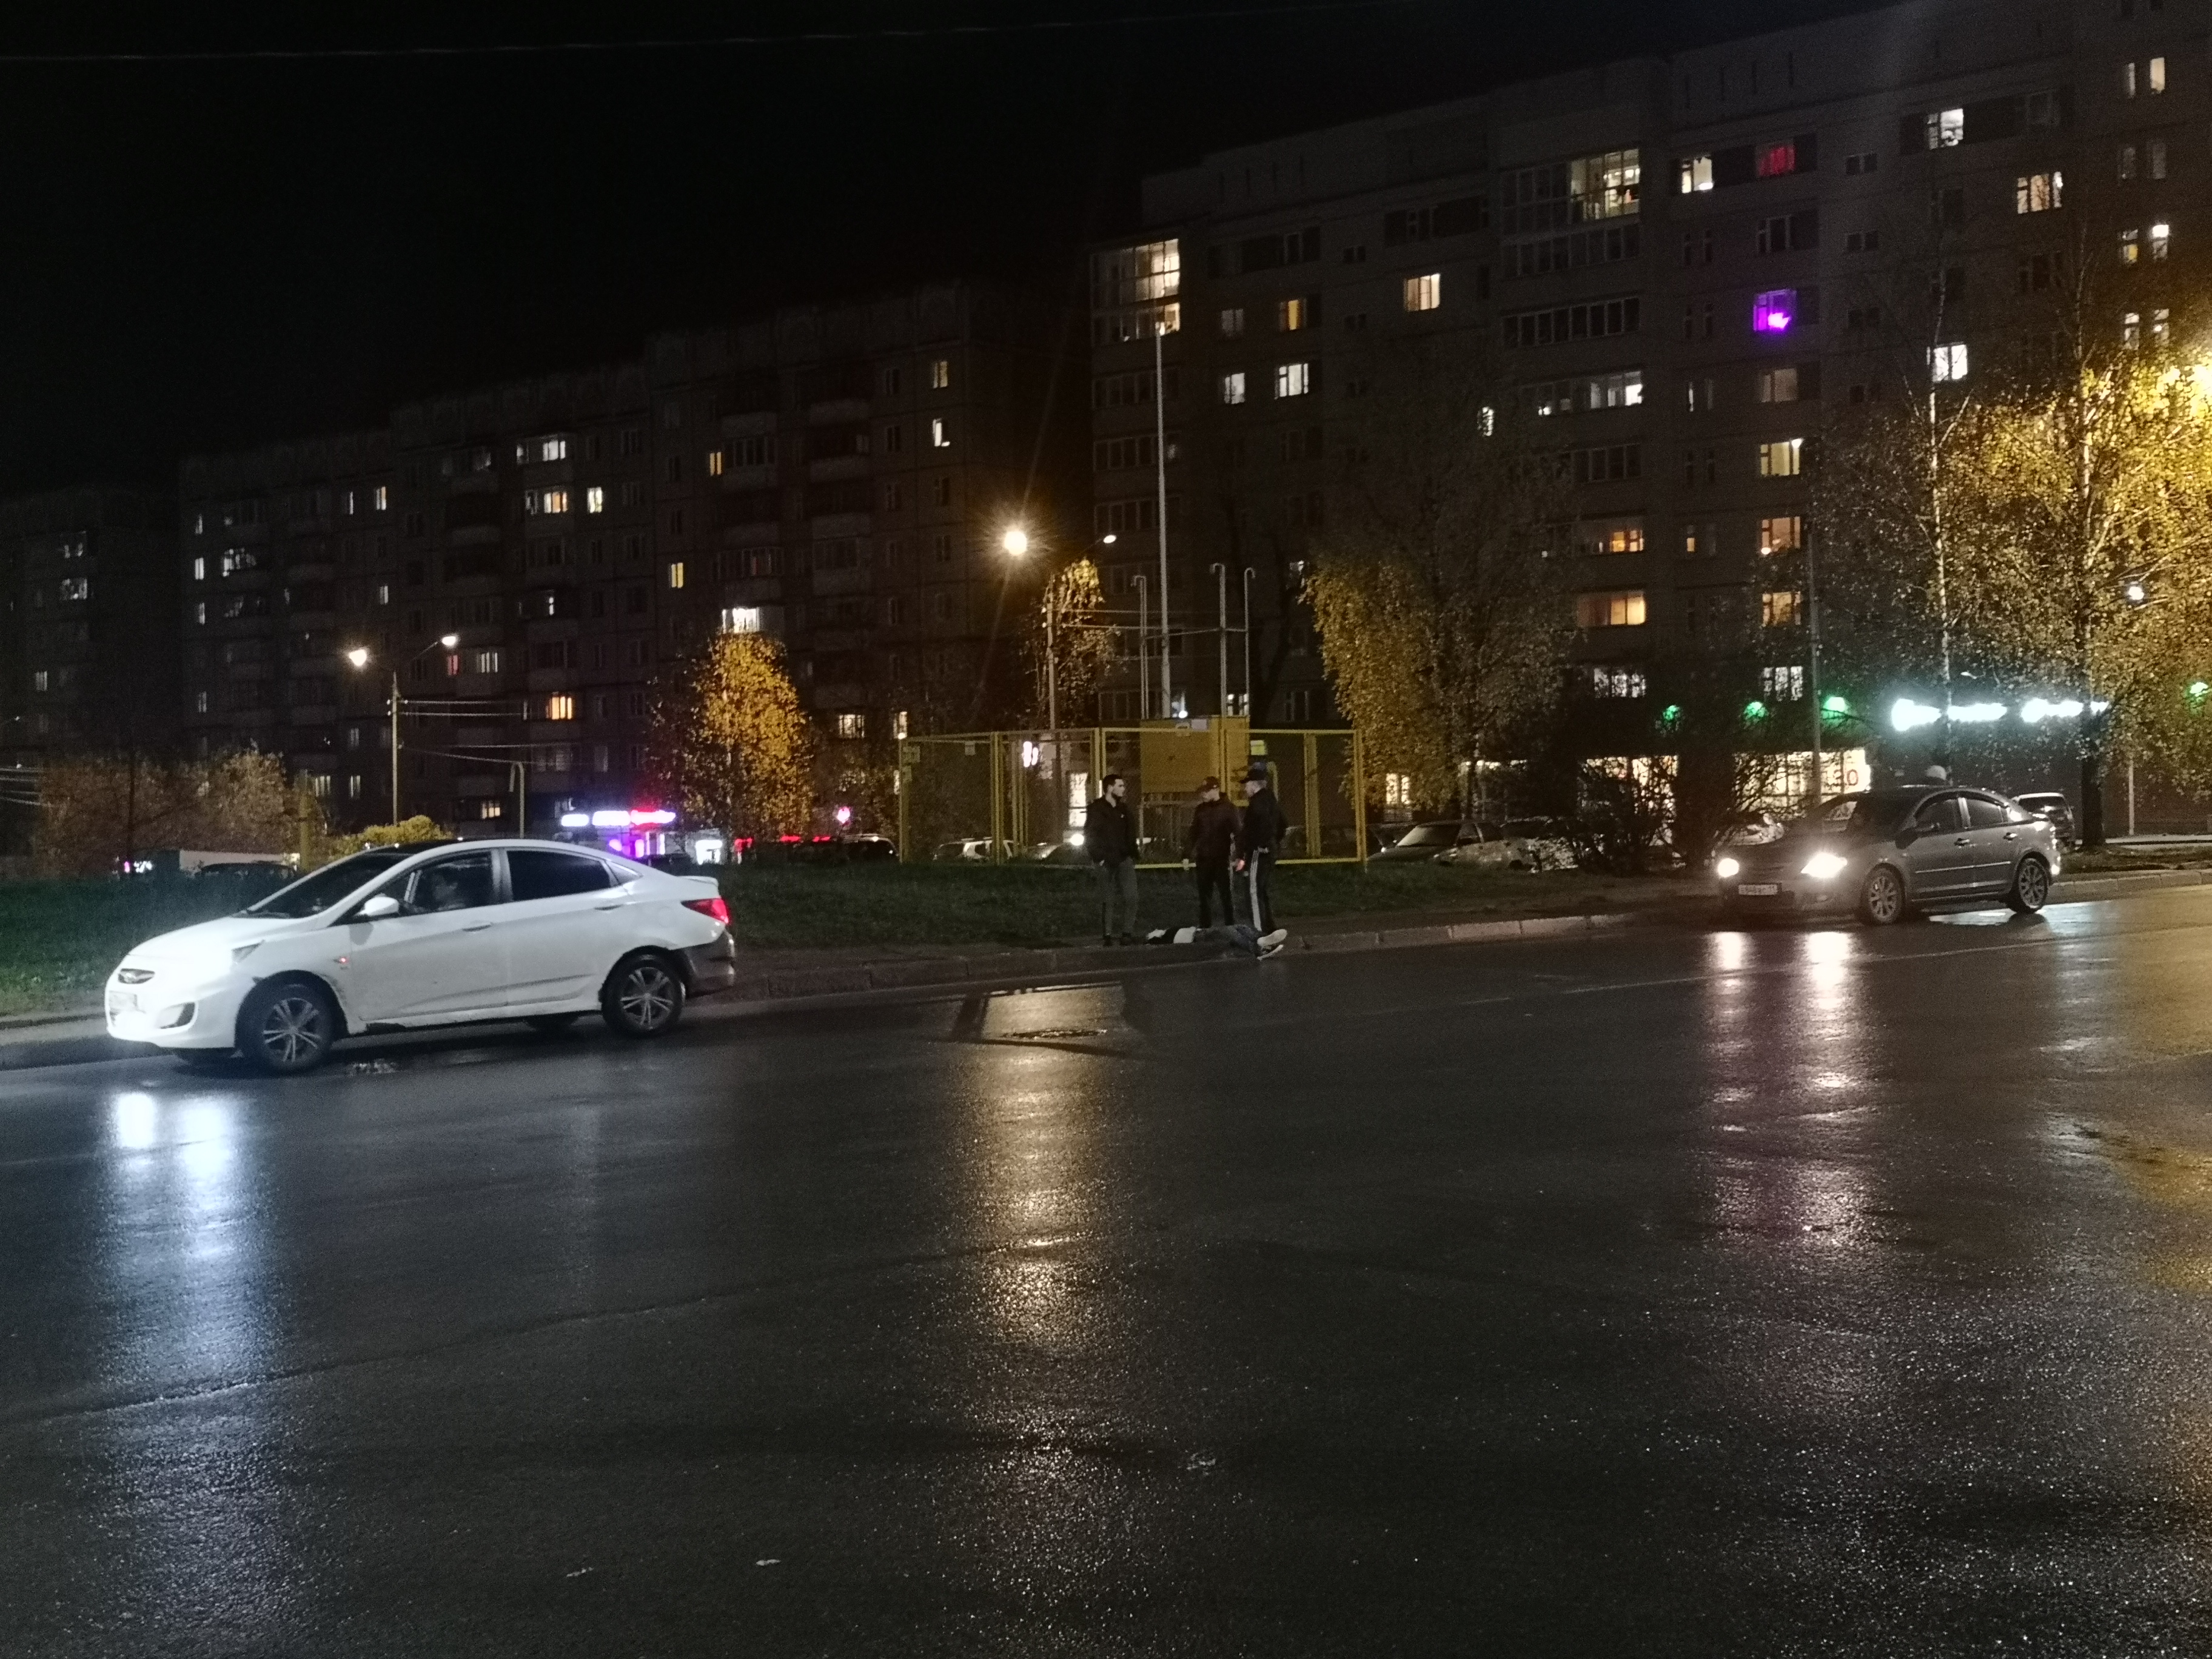 Оттащили на обочину: очевидцы рассказали о мужчине, лежащем на проезжей части в Сыктывкаре